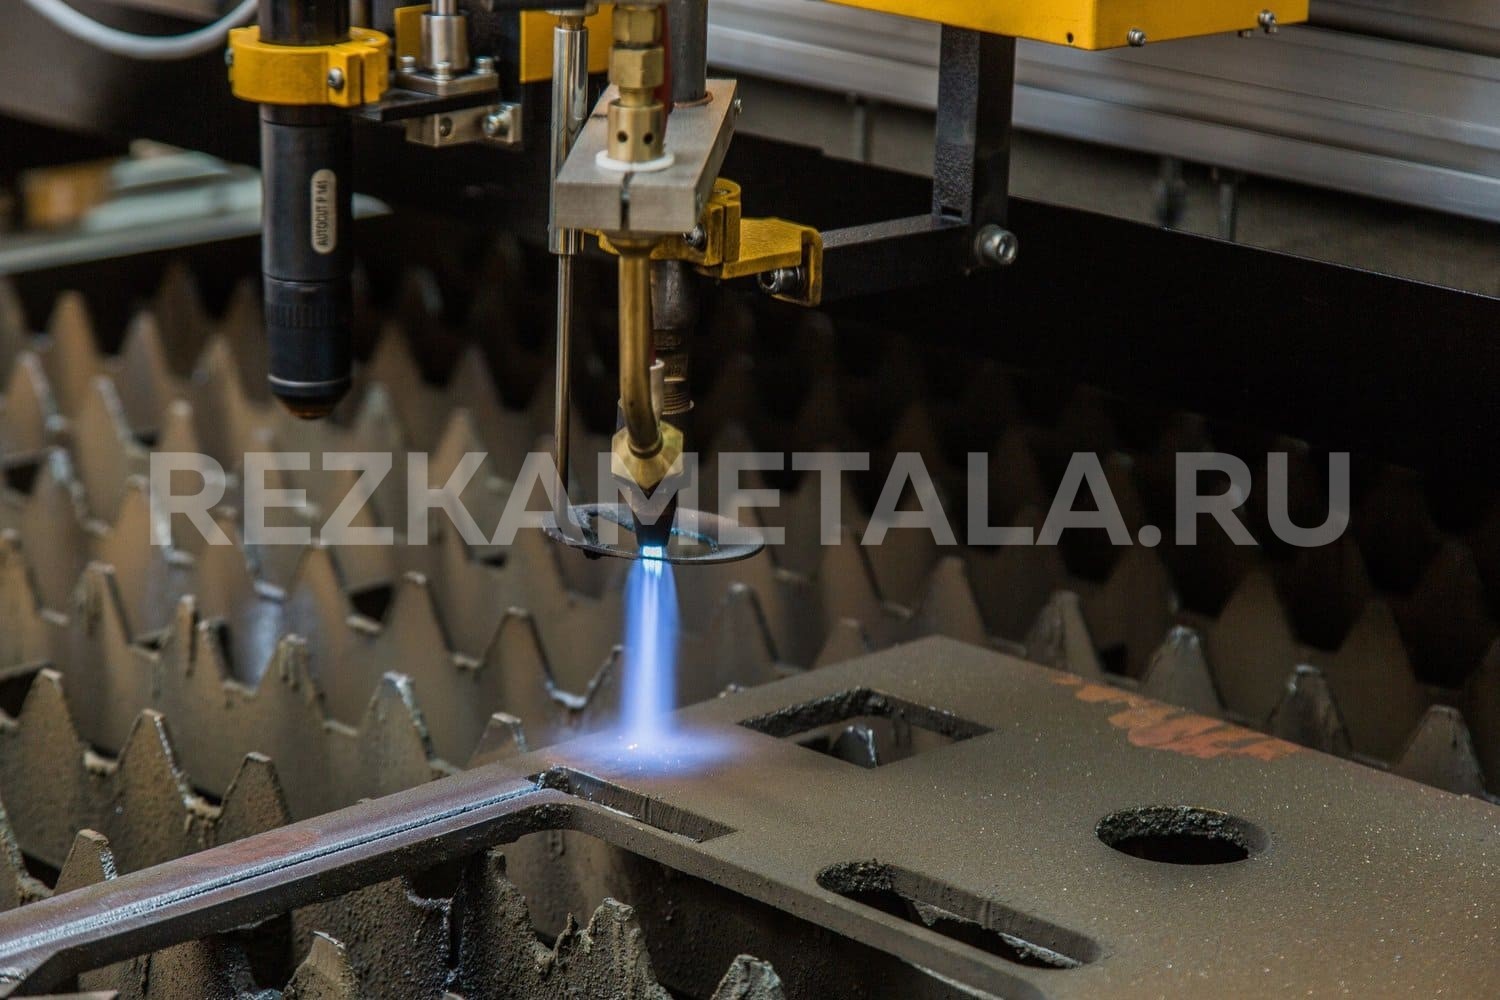 Художественная лазерная резка металла в Казани